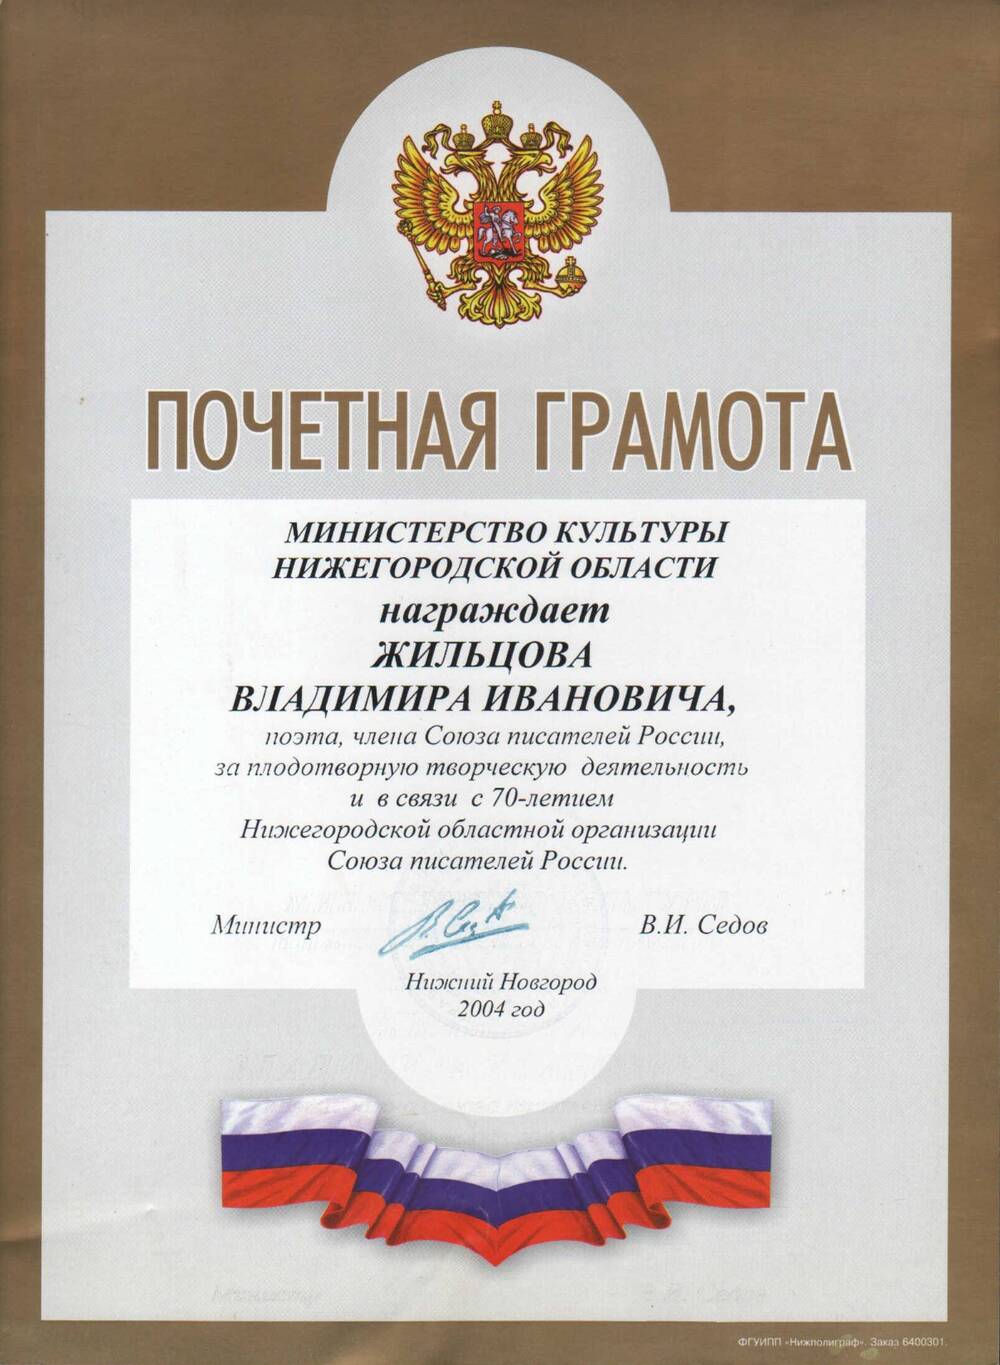 Почетная грамота Жильцова В.И. 2004 г.